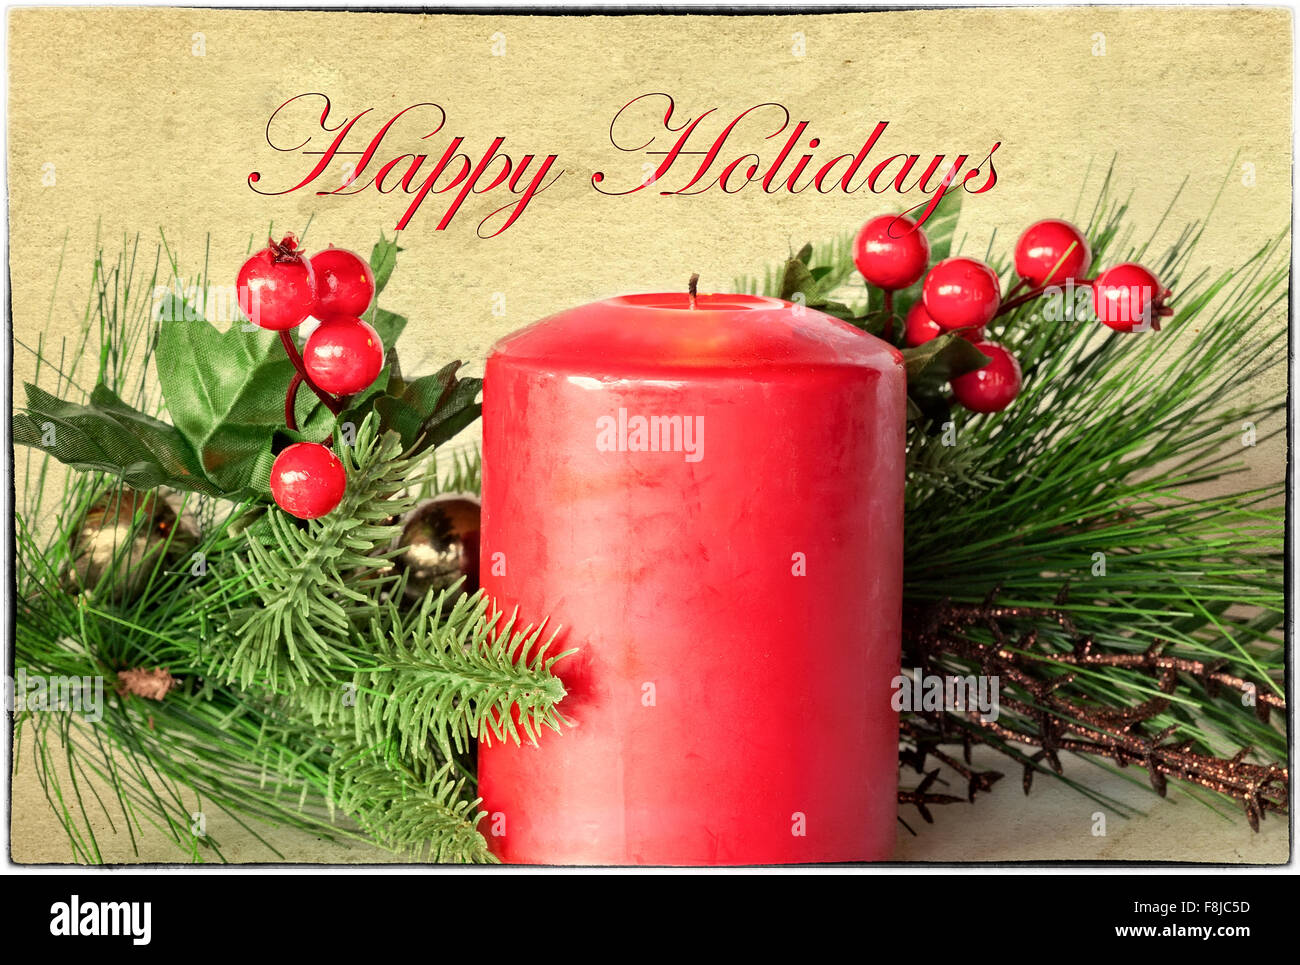 Tarjeta de felicitación de navidad con evergreen, bayas de acebo, vela roja, frontera y Felices Fiestas texto Foto de stock